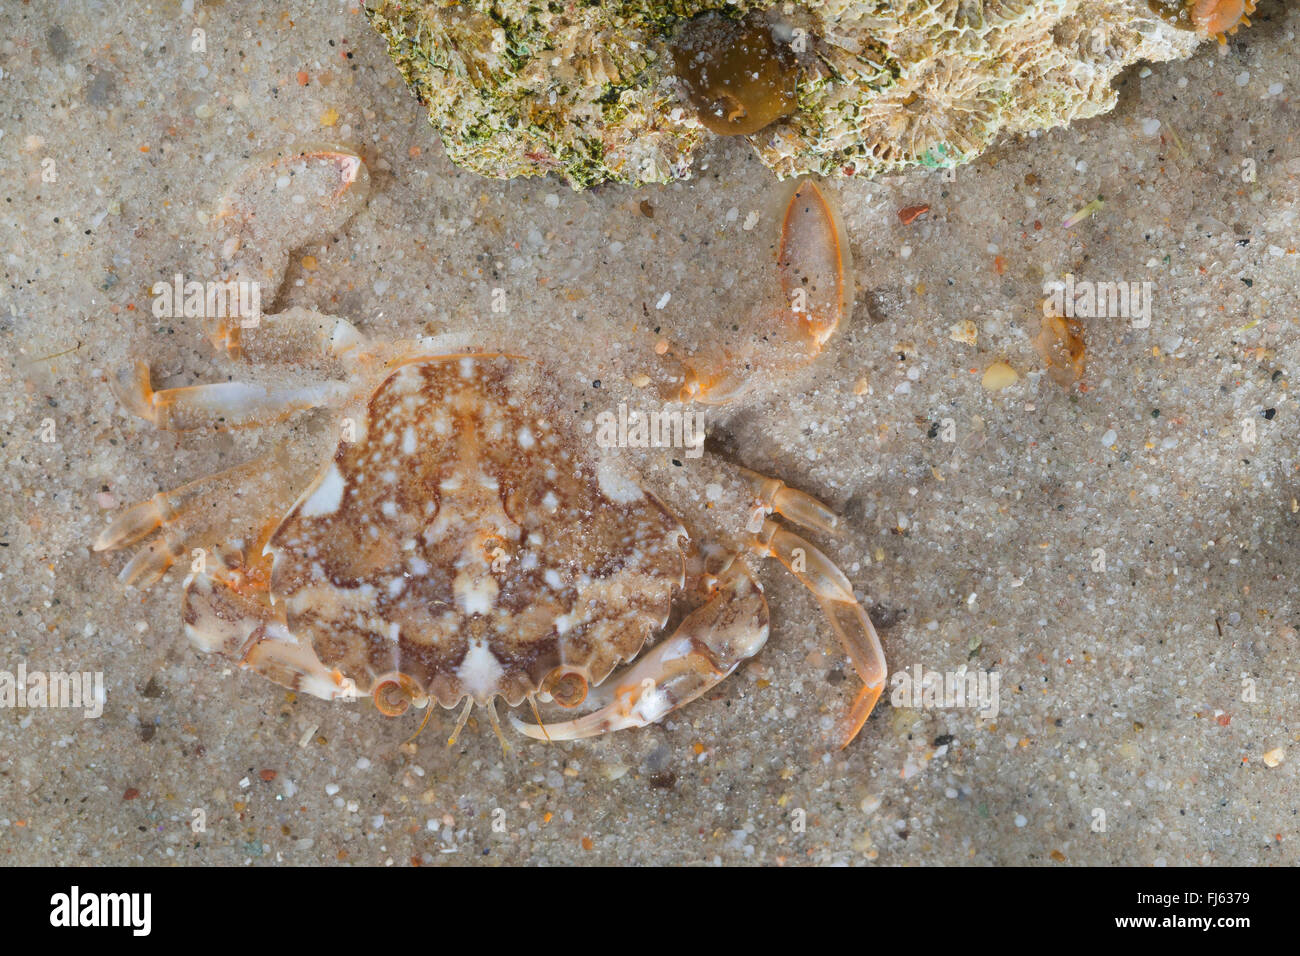 marbled swimming crab (Liocarcinus marmoreus, Portunus marmoreus), on sea bottom Stock Photo